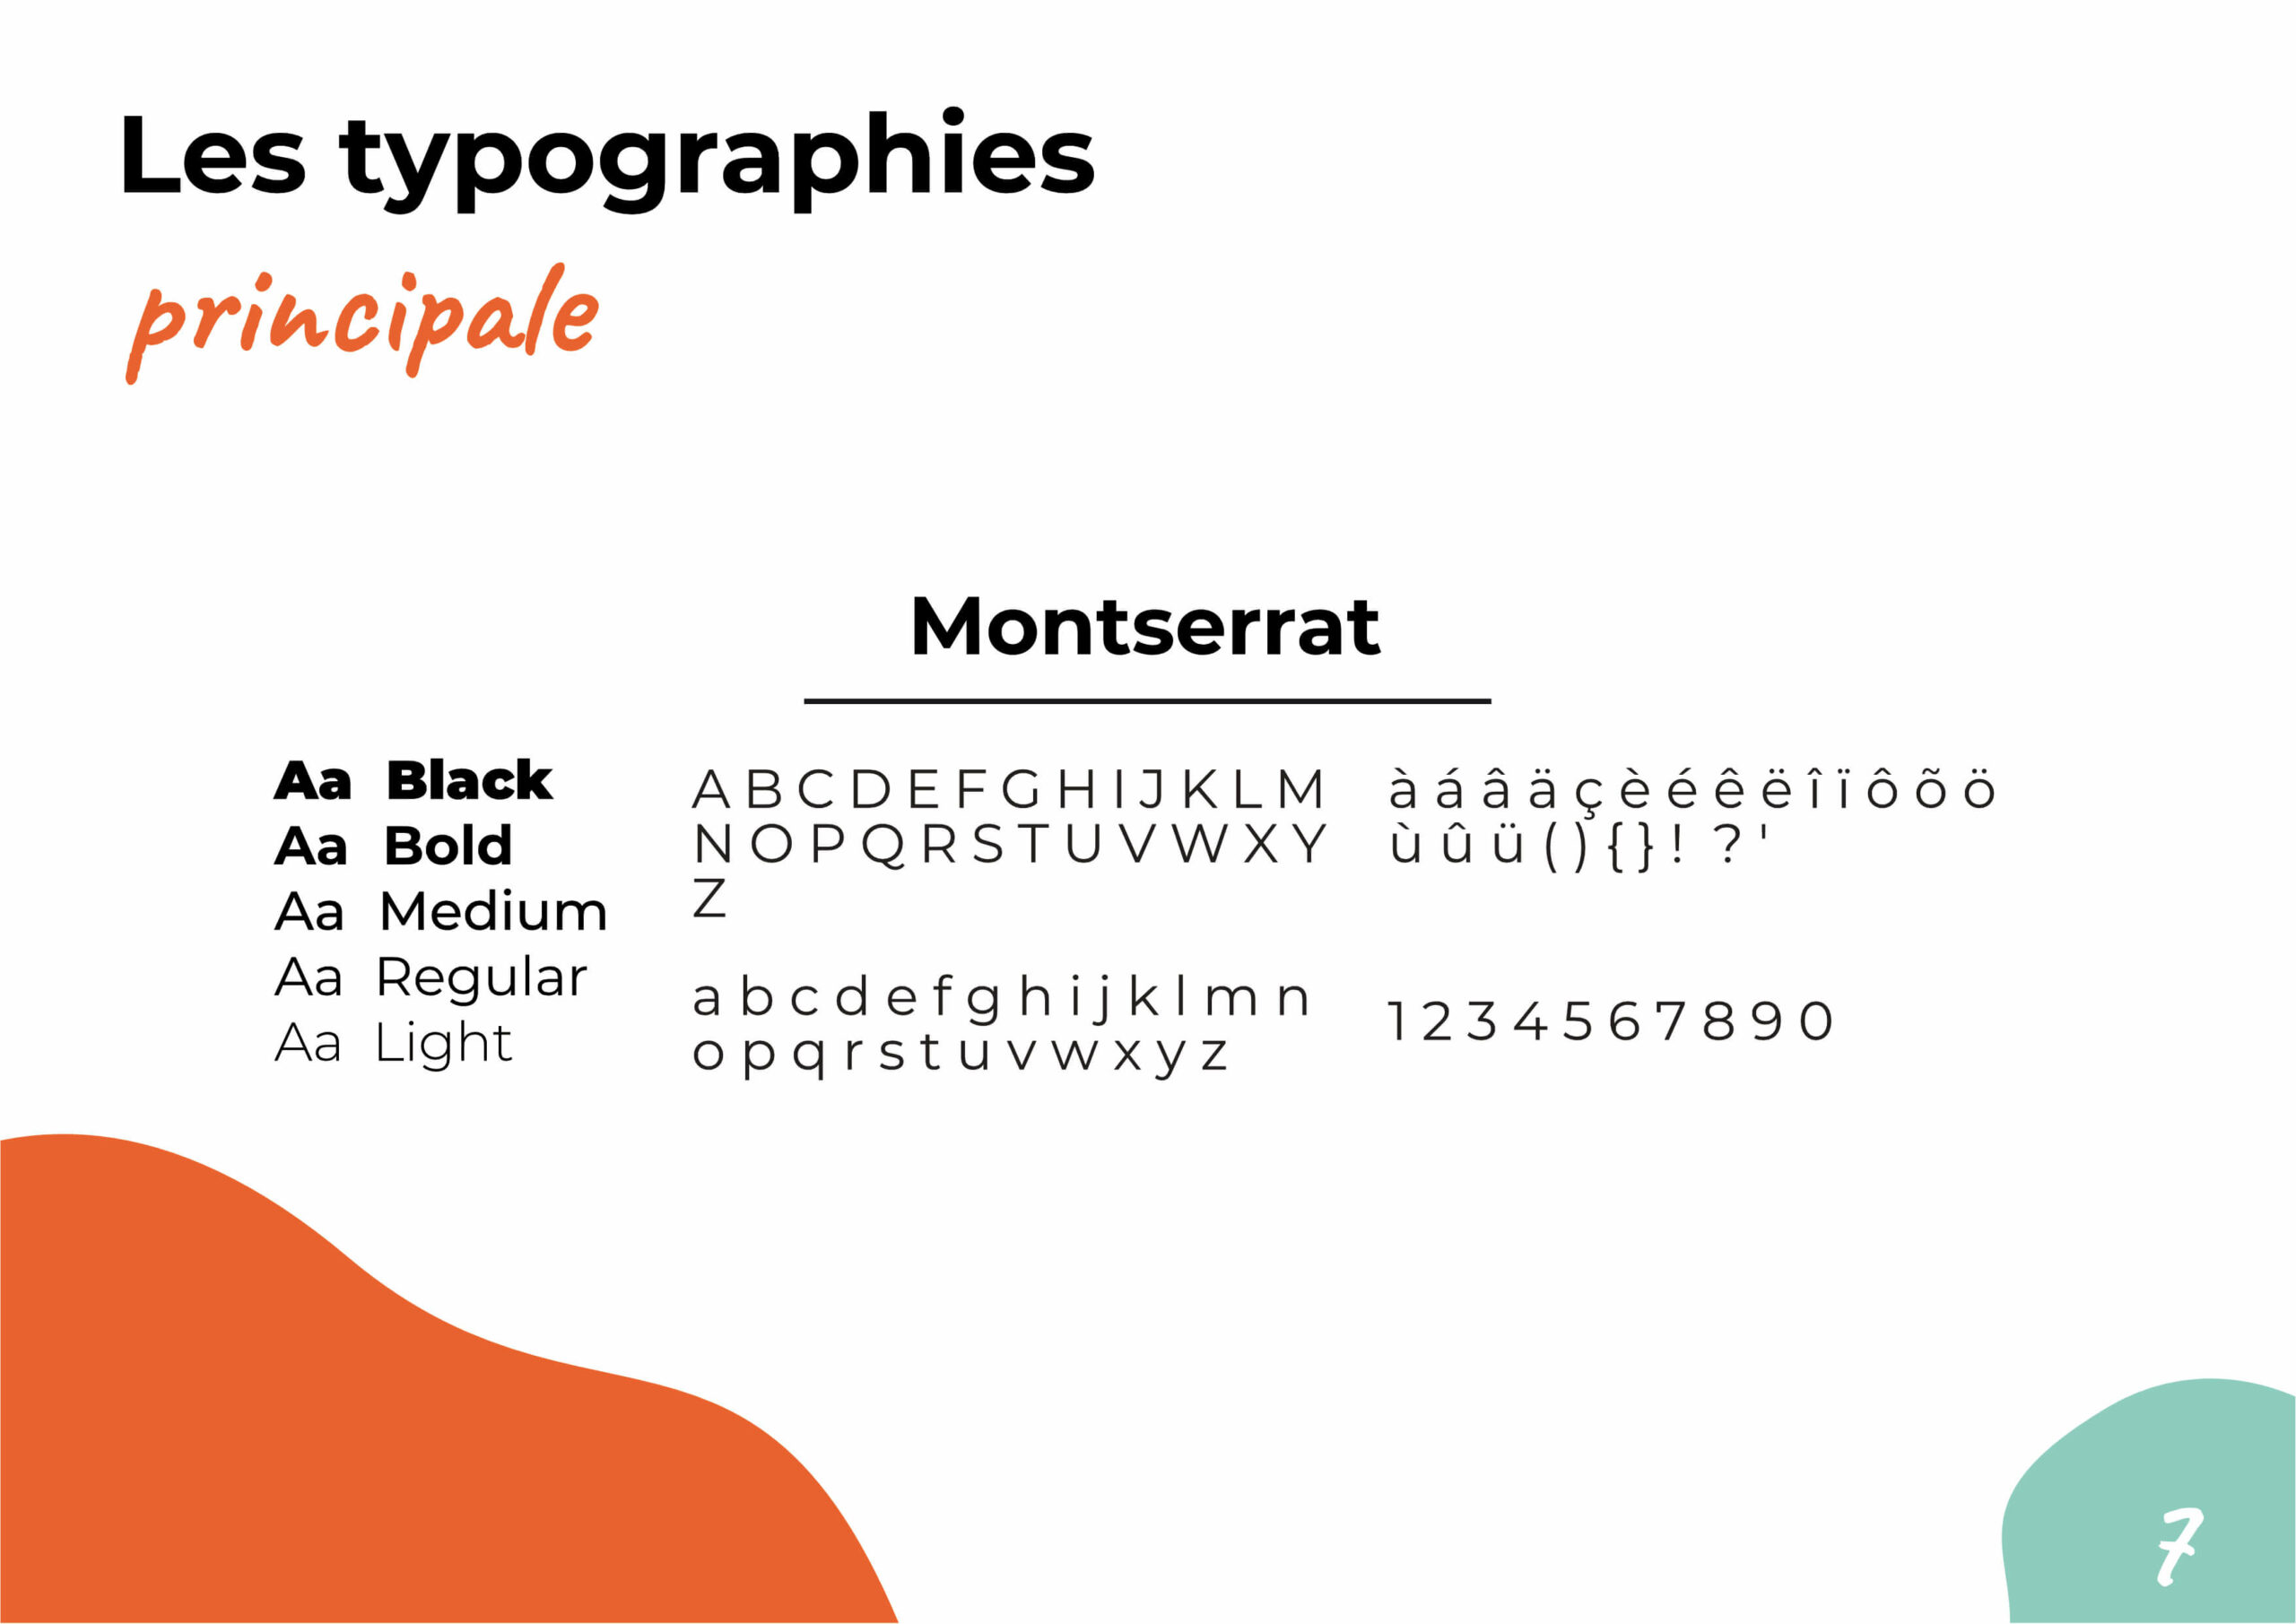 Identité graphique - format document p7 - Creatike - créé(e) par Camille Laot